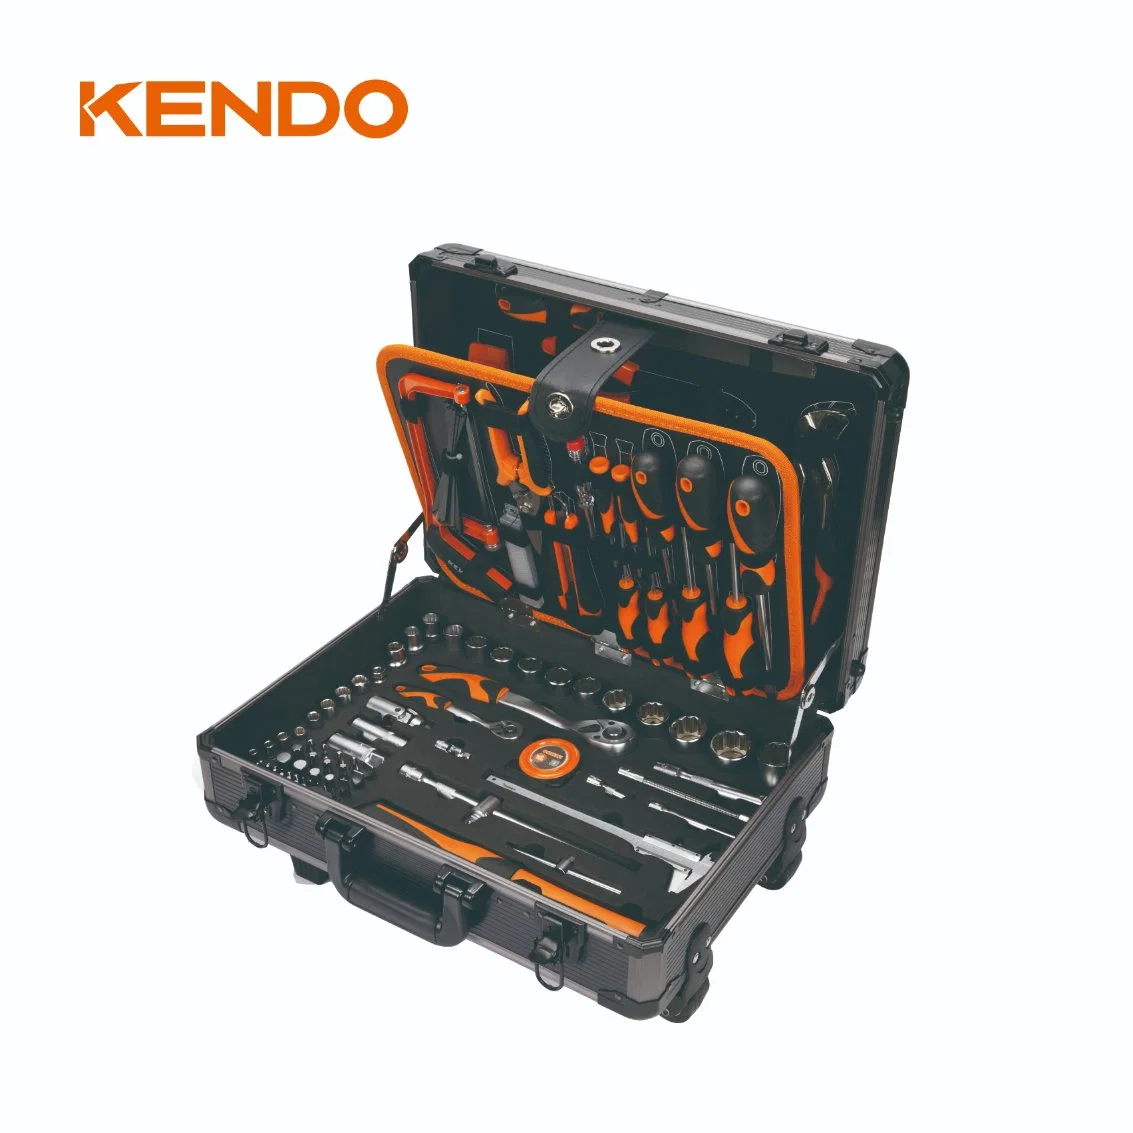 Kendo 161PC Aluminum Case Tool مجموعة المنزل وإصلاح السيارات طقم صندوق الأدوات اليدوي